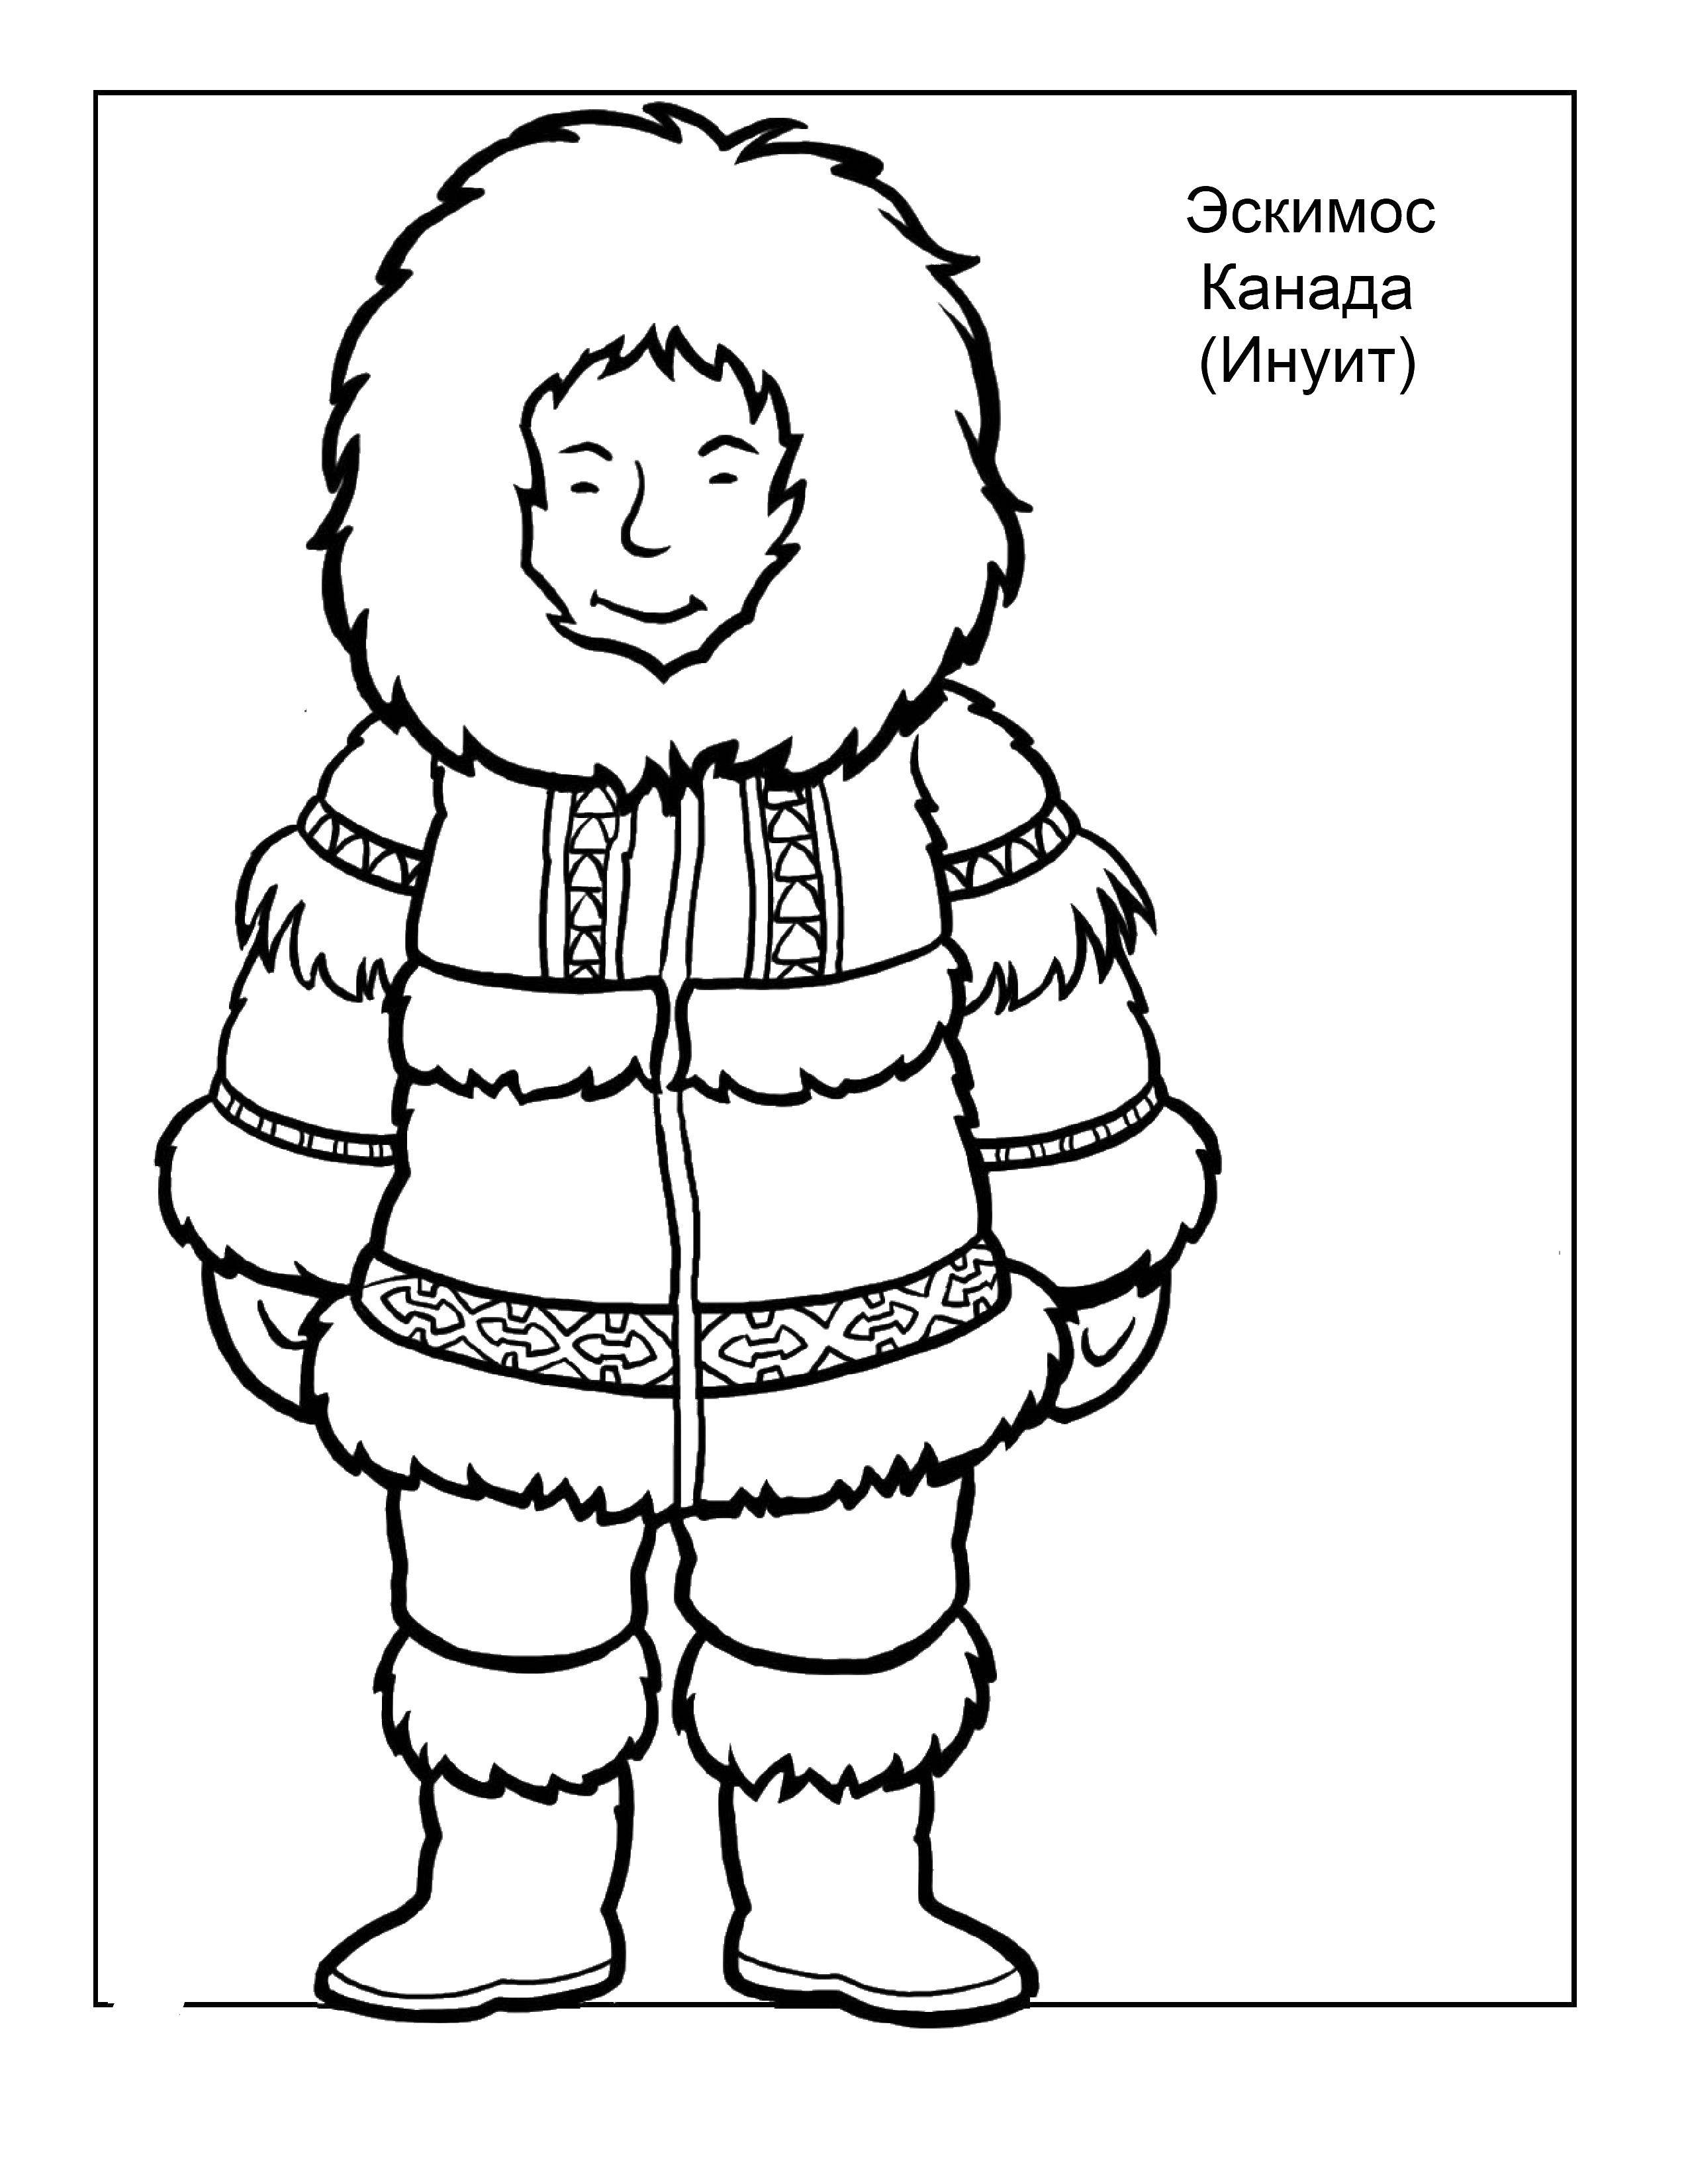 Название: Раскраска Канадский эскимос. Категория: Культура разных государств мира. Теги: Канада, эскимос.